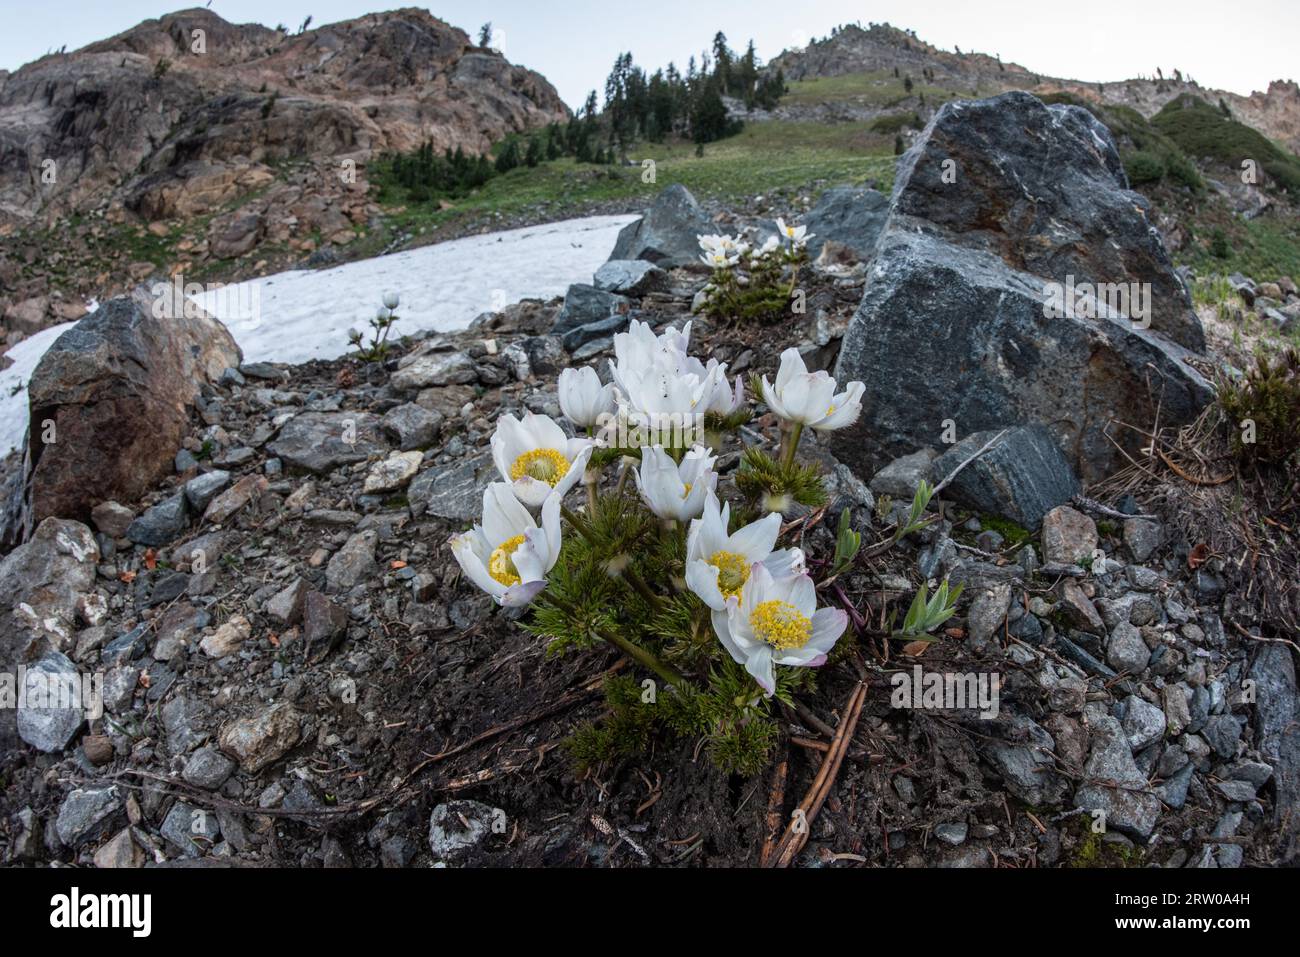 Anemone occidentalis, der weiße oder westliche Pasqueflower, wächst nach der Schneeschmelze in der Wildnis der Trinity alps in Nordkalifornien, USA. Stockfoto